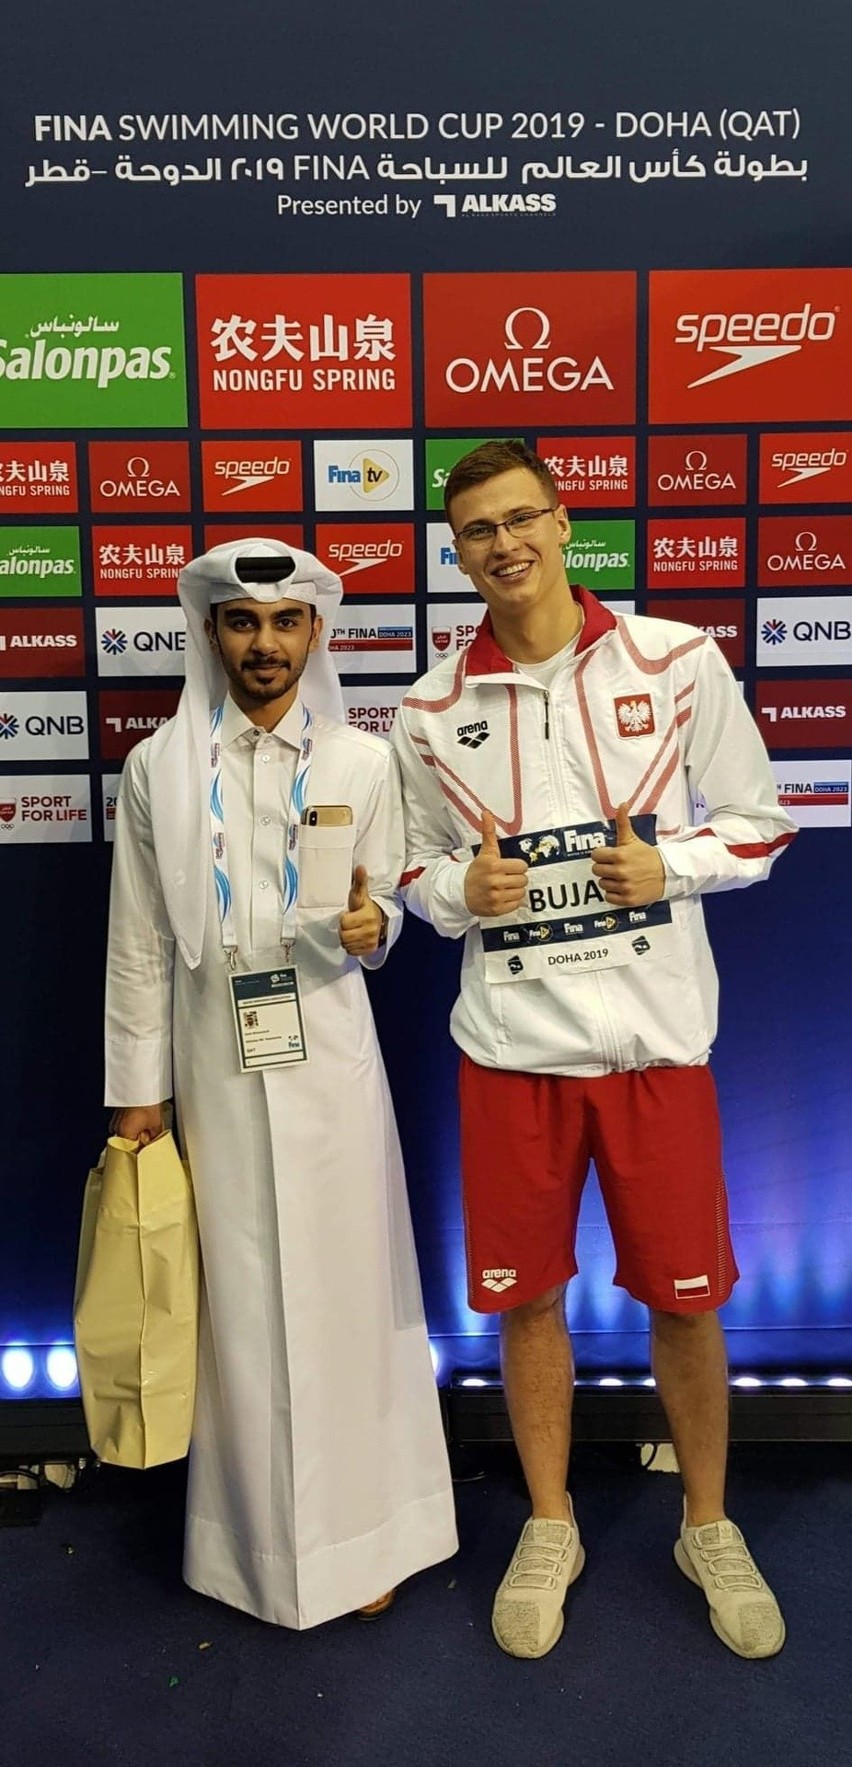 Pływak z Kielc Dominik Bujak trzy razy w finale Pucharu Świata w katarskim Doha [ZDJĘCIA]